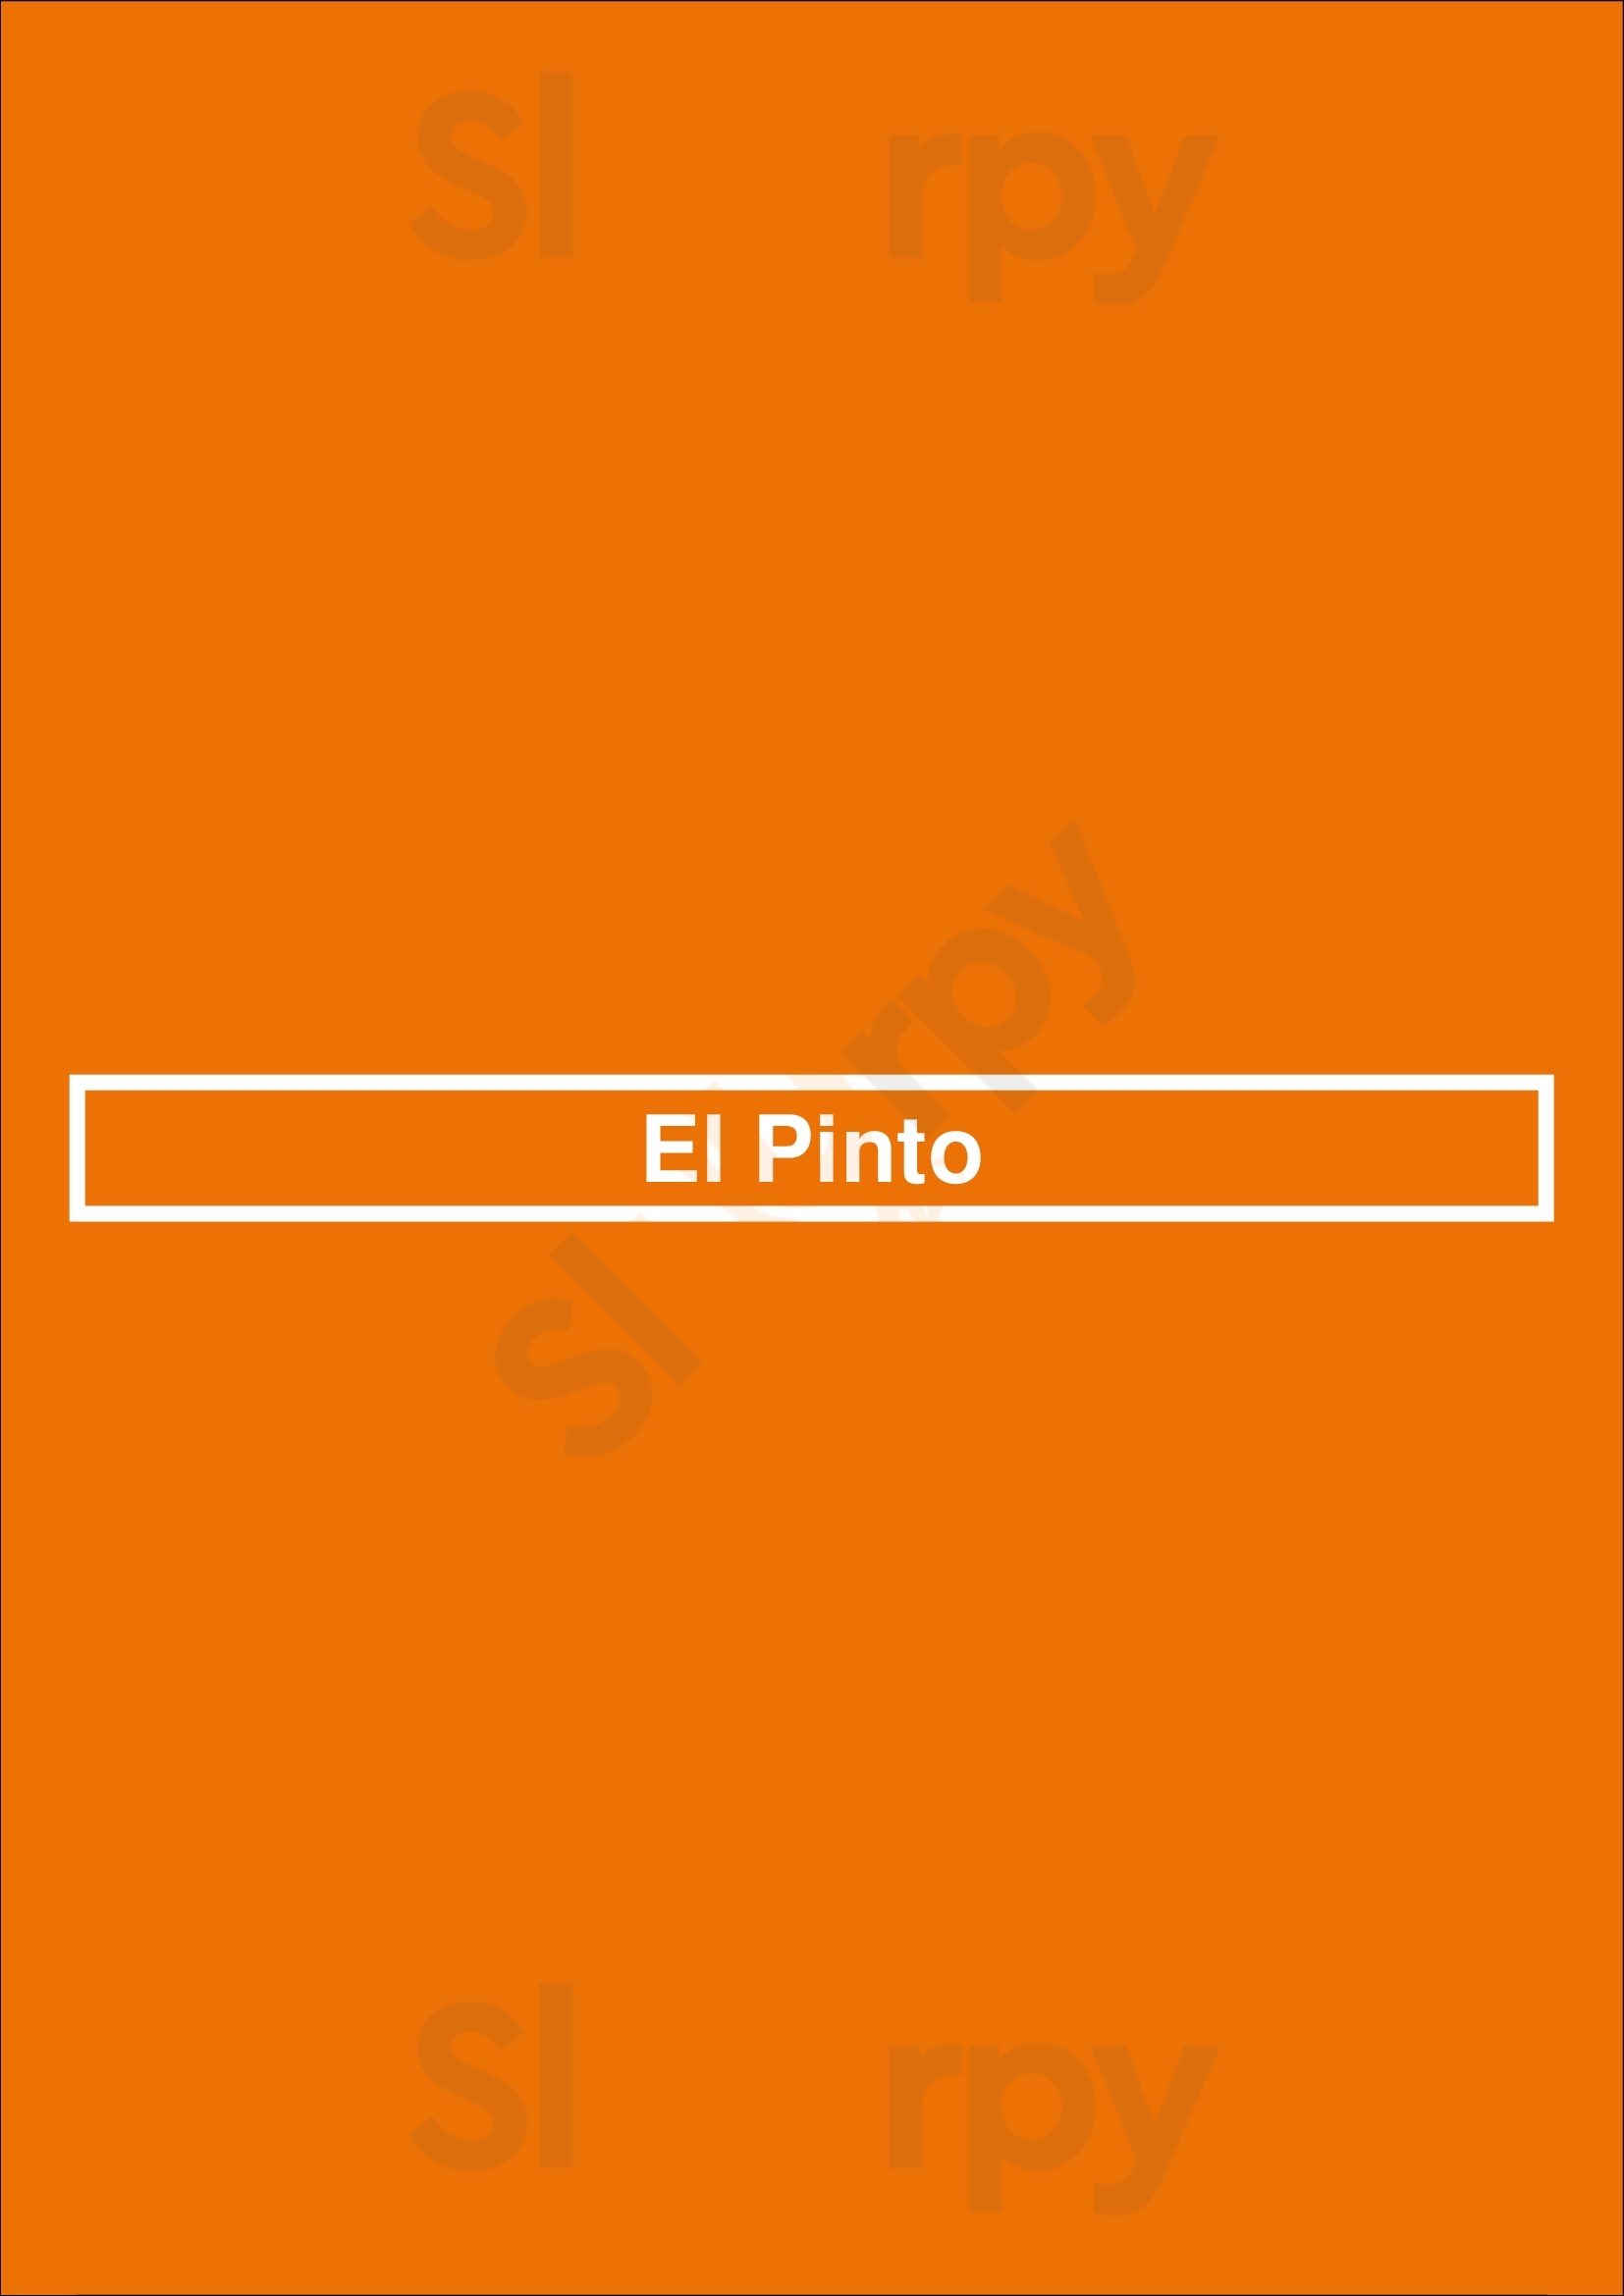 El Pinto Albuquerque Menu - 1